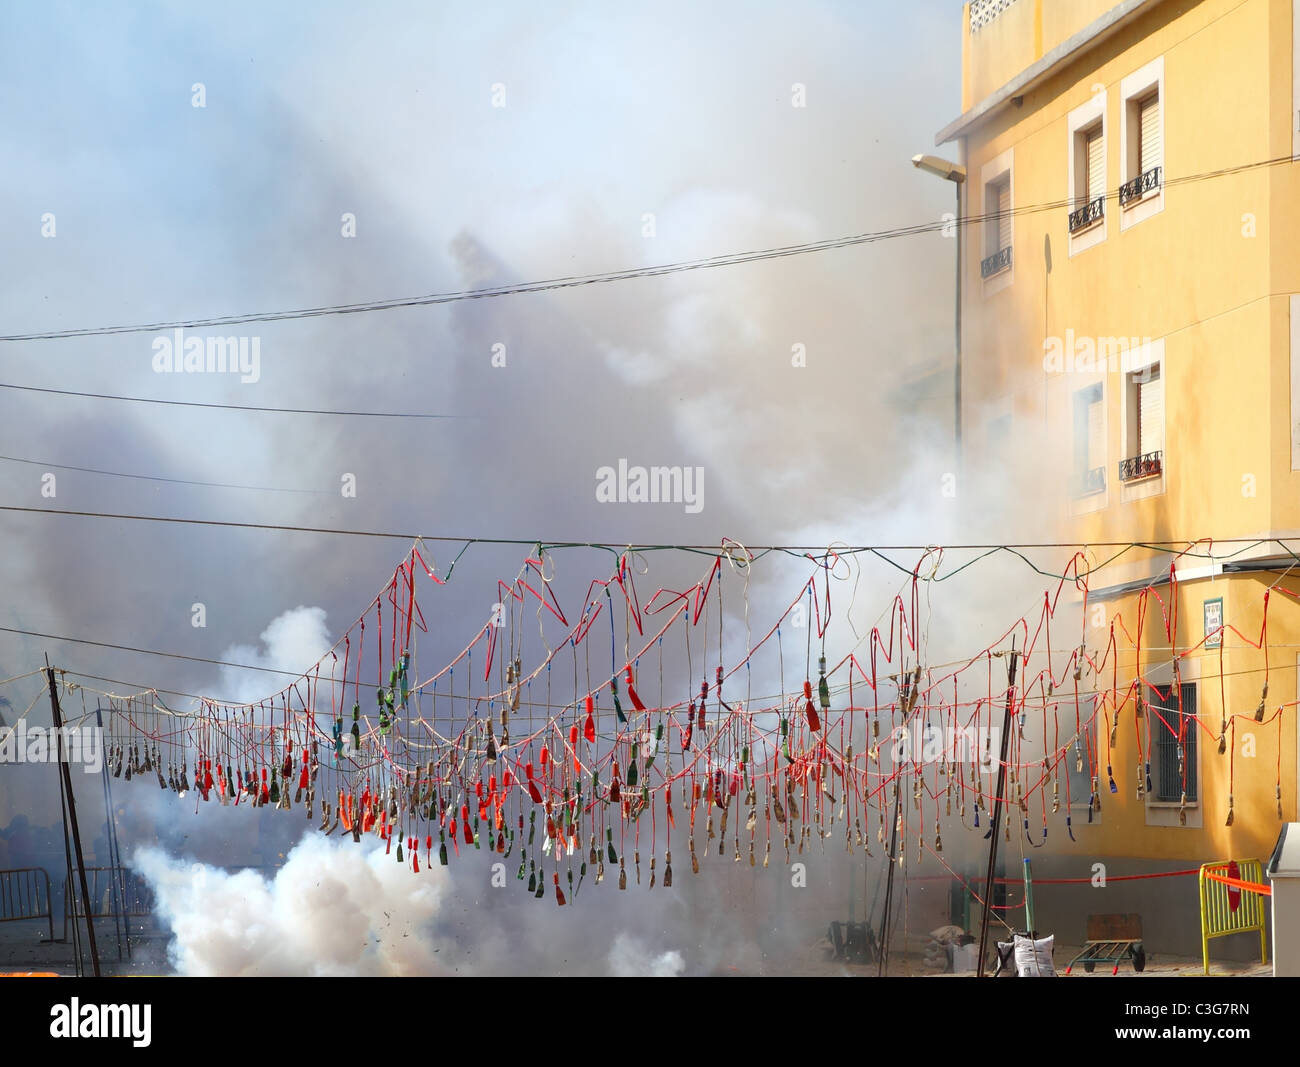 Feuerwerk Feuerwerkskörper explodiert in Rauch Straße in Spanien fest Stockfoto